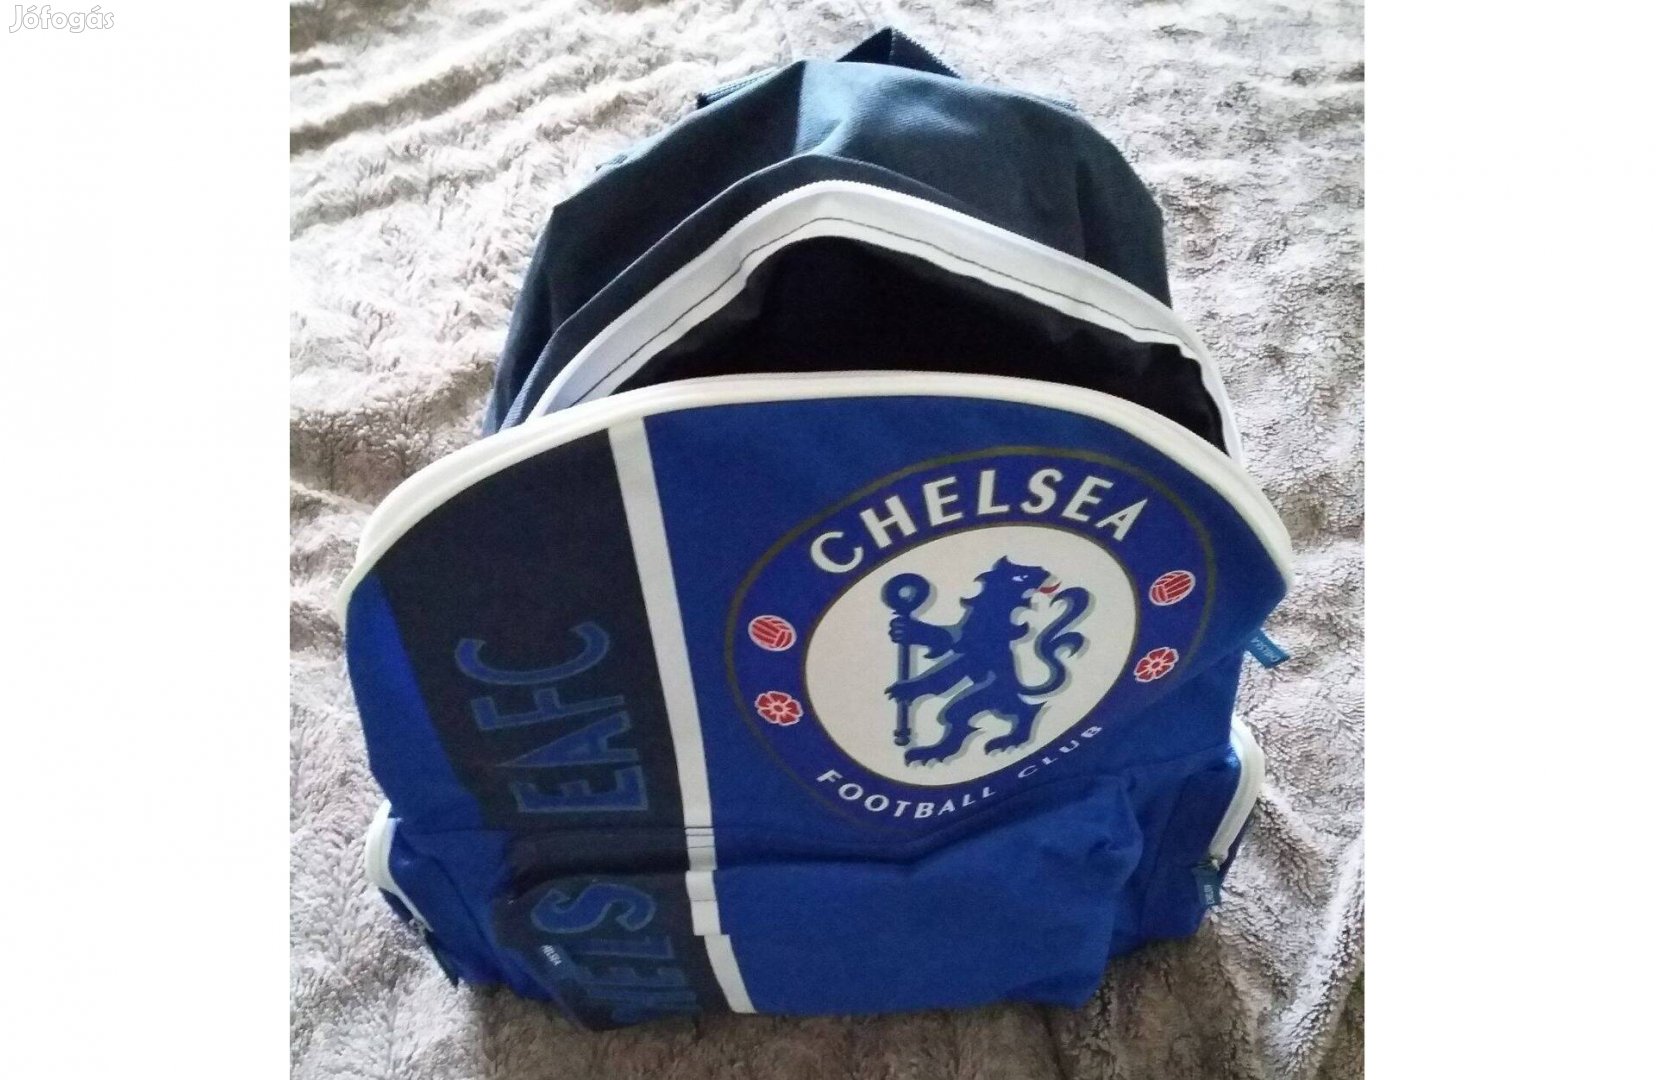 Chelsea-s hátizsák!